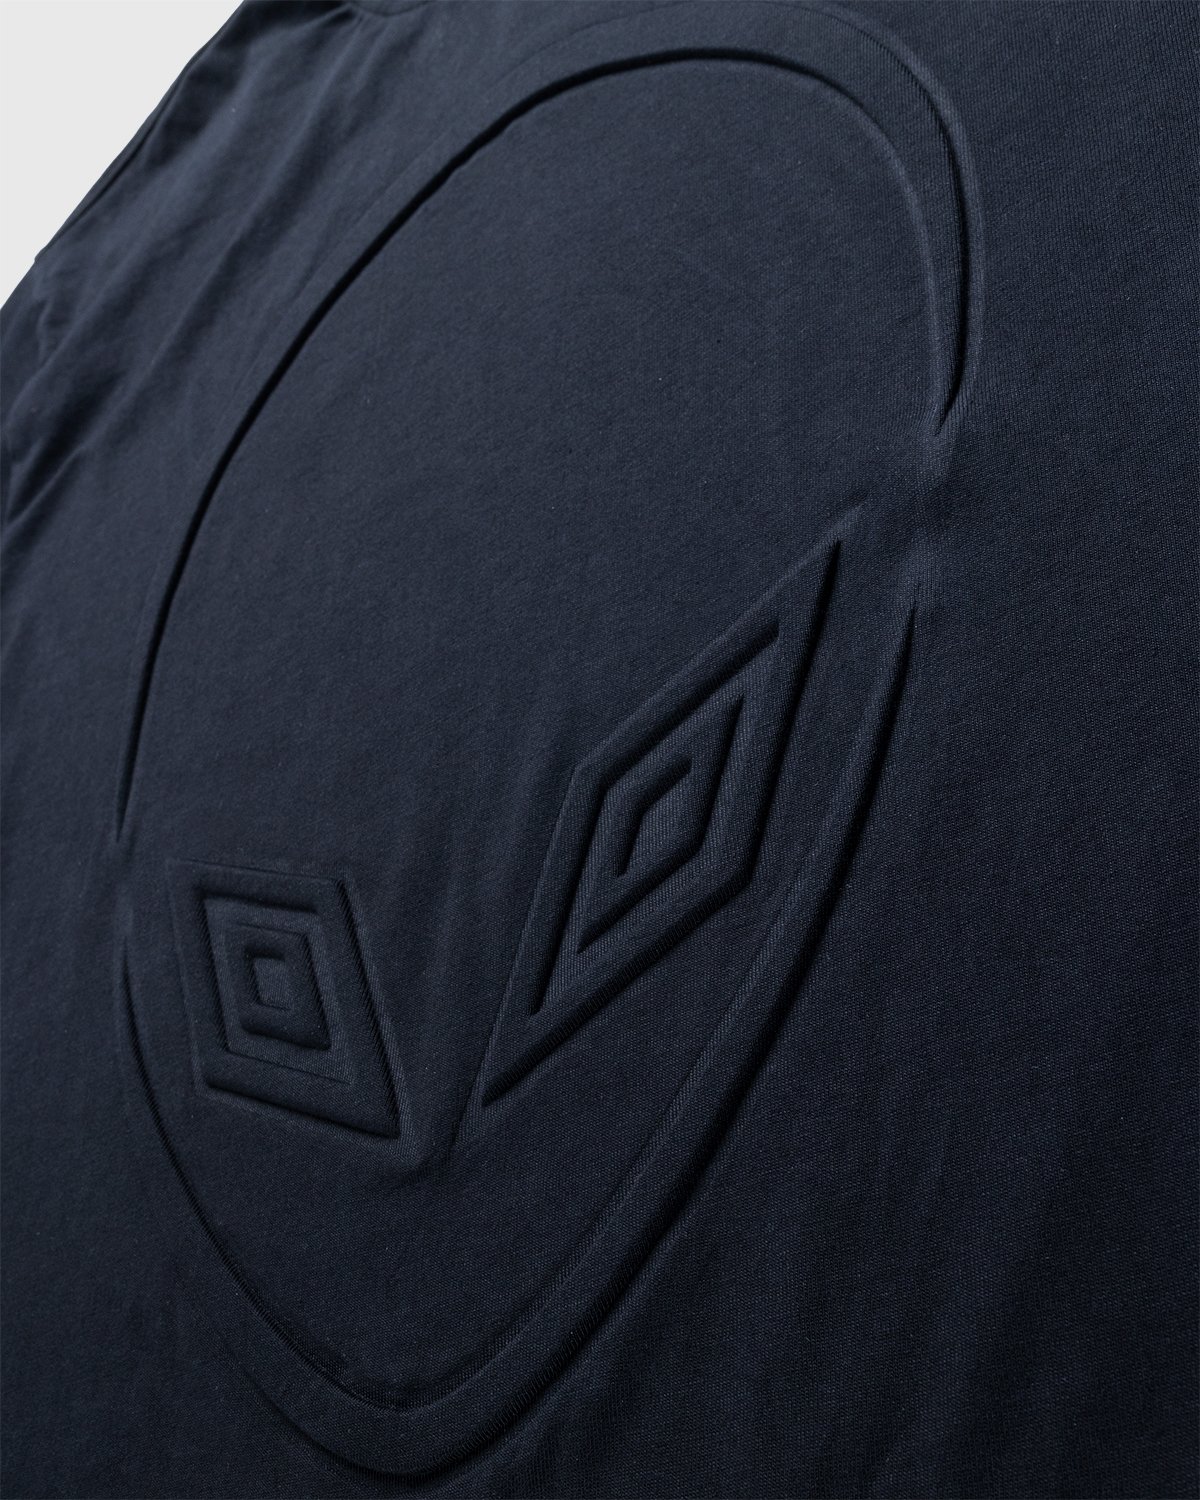 Umbro x Sucux - Oversize T-Shirt Black - Clothing - Black - Image 5